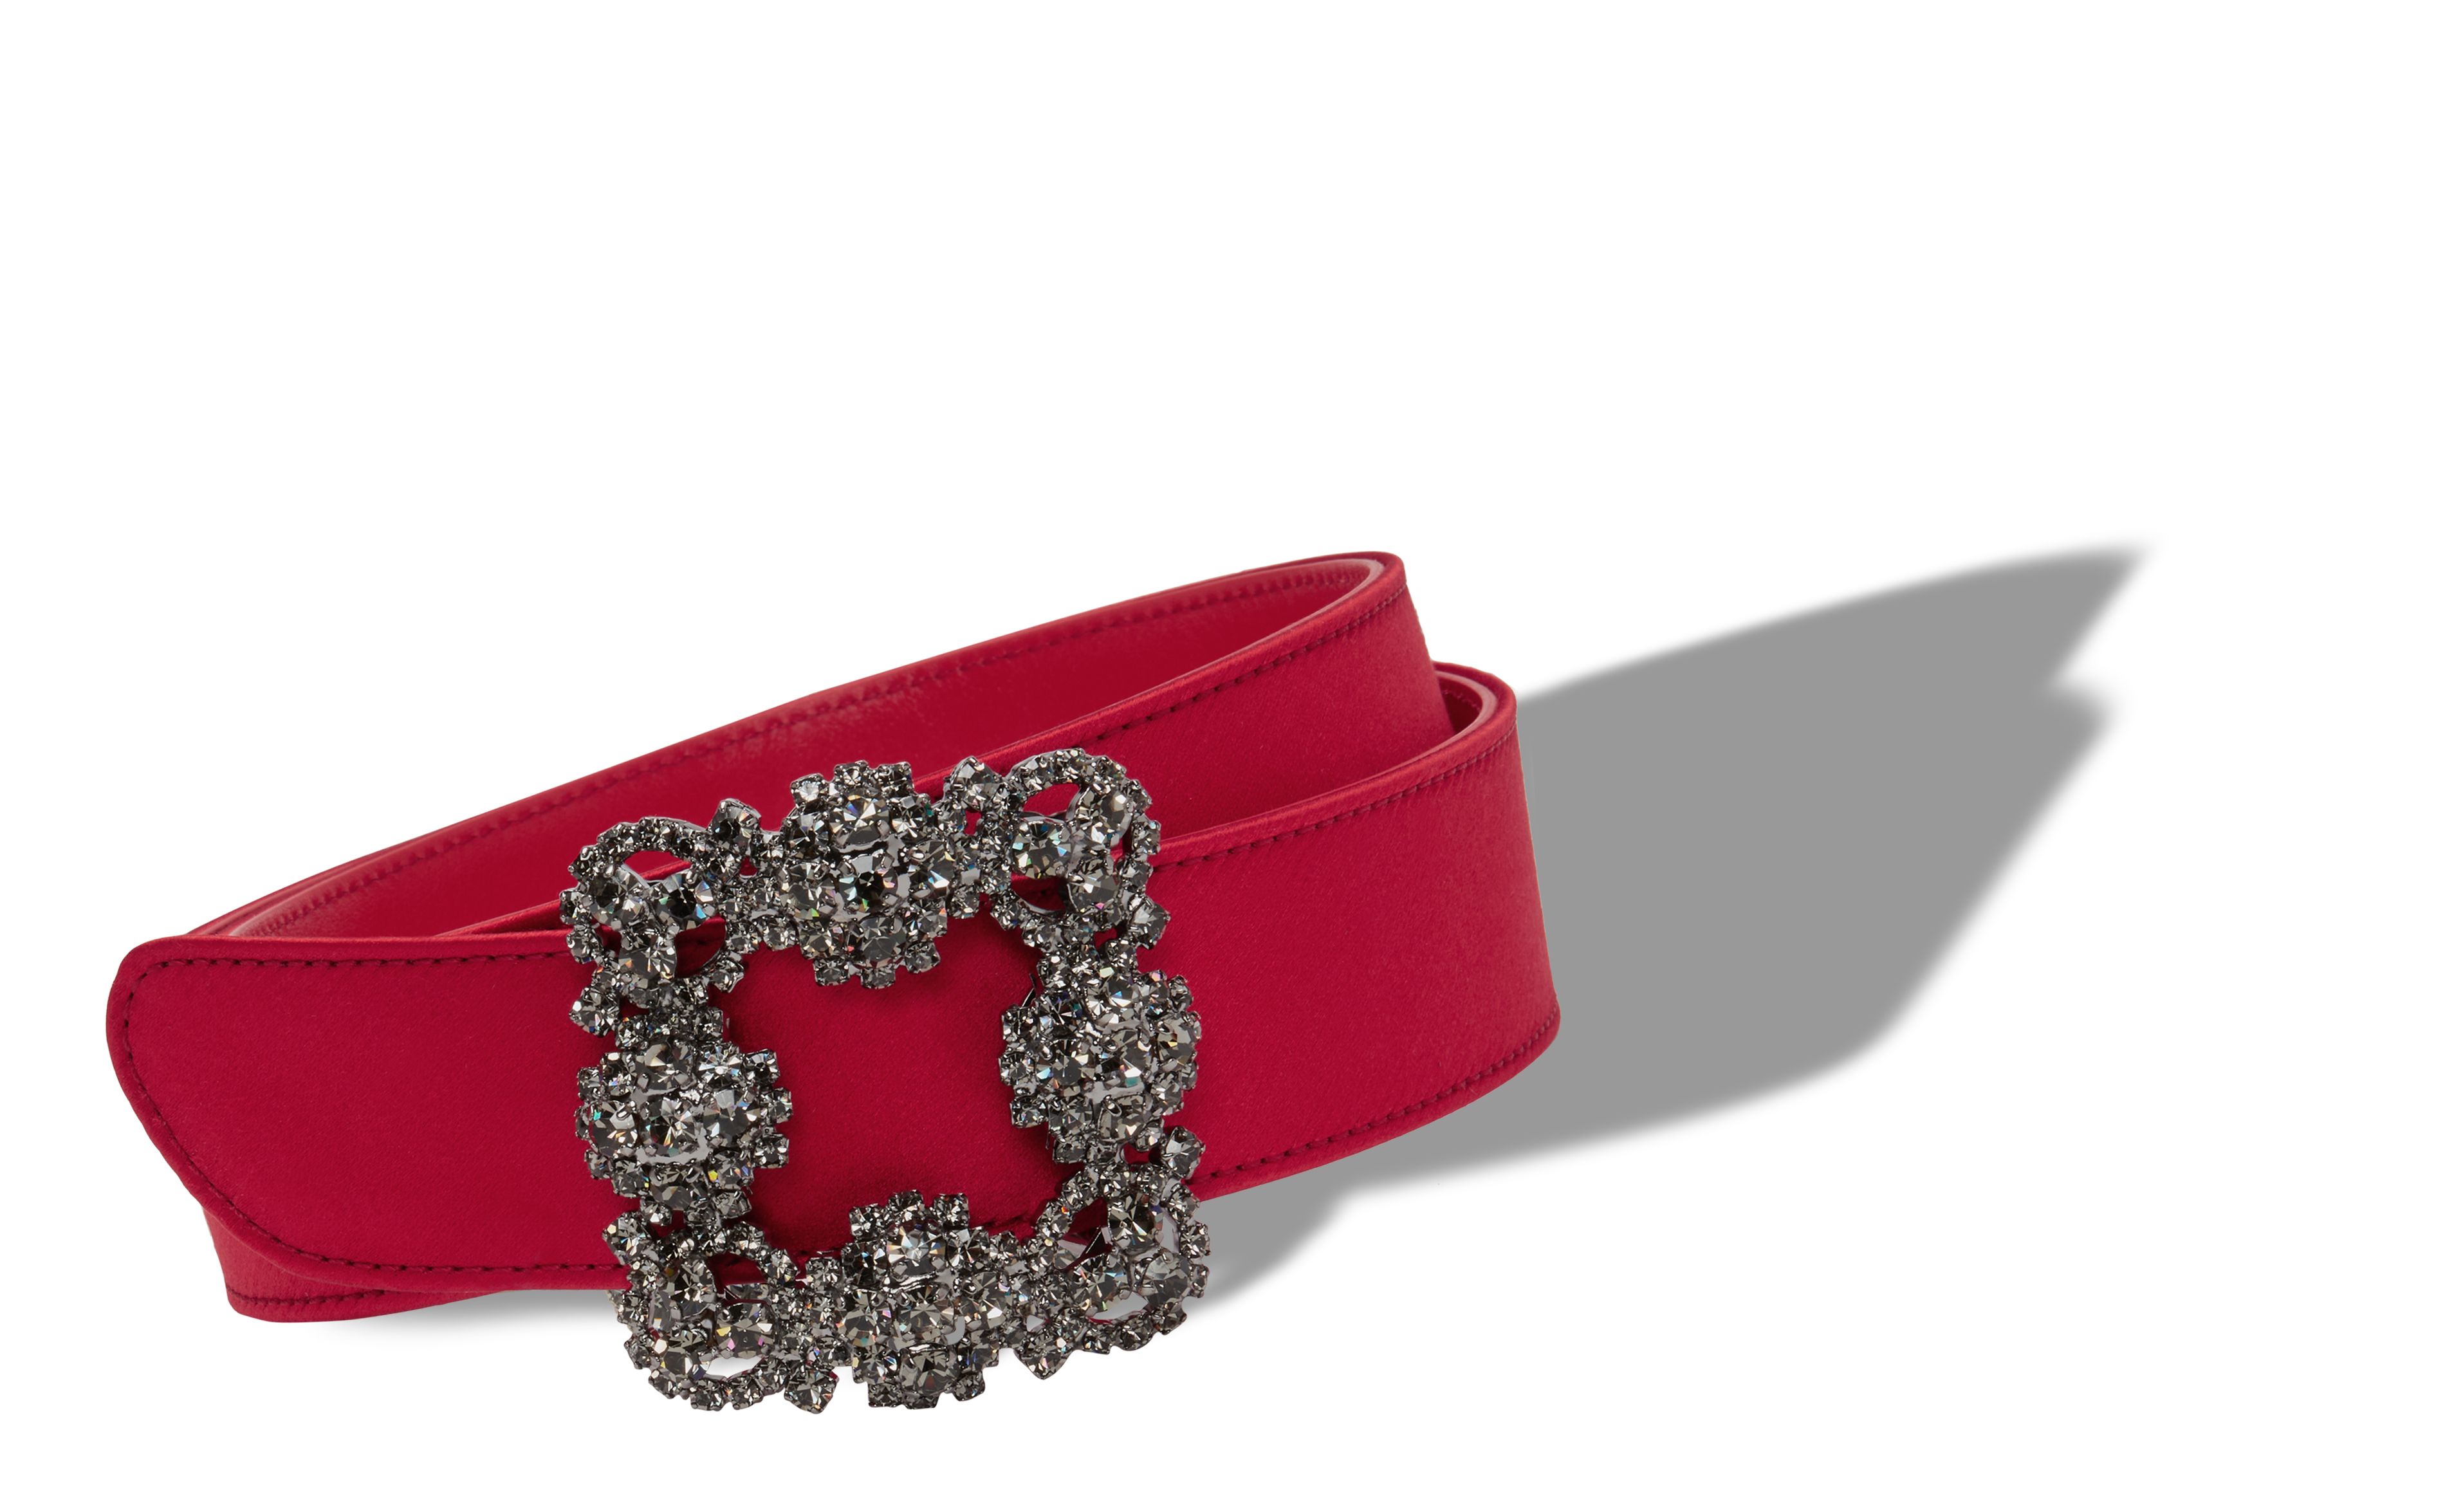 Designer Red Satin Crystal Buckled Belt - Image Main